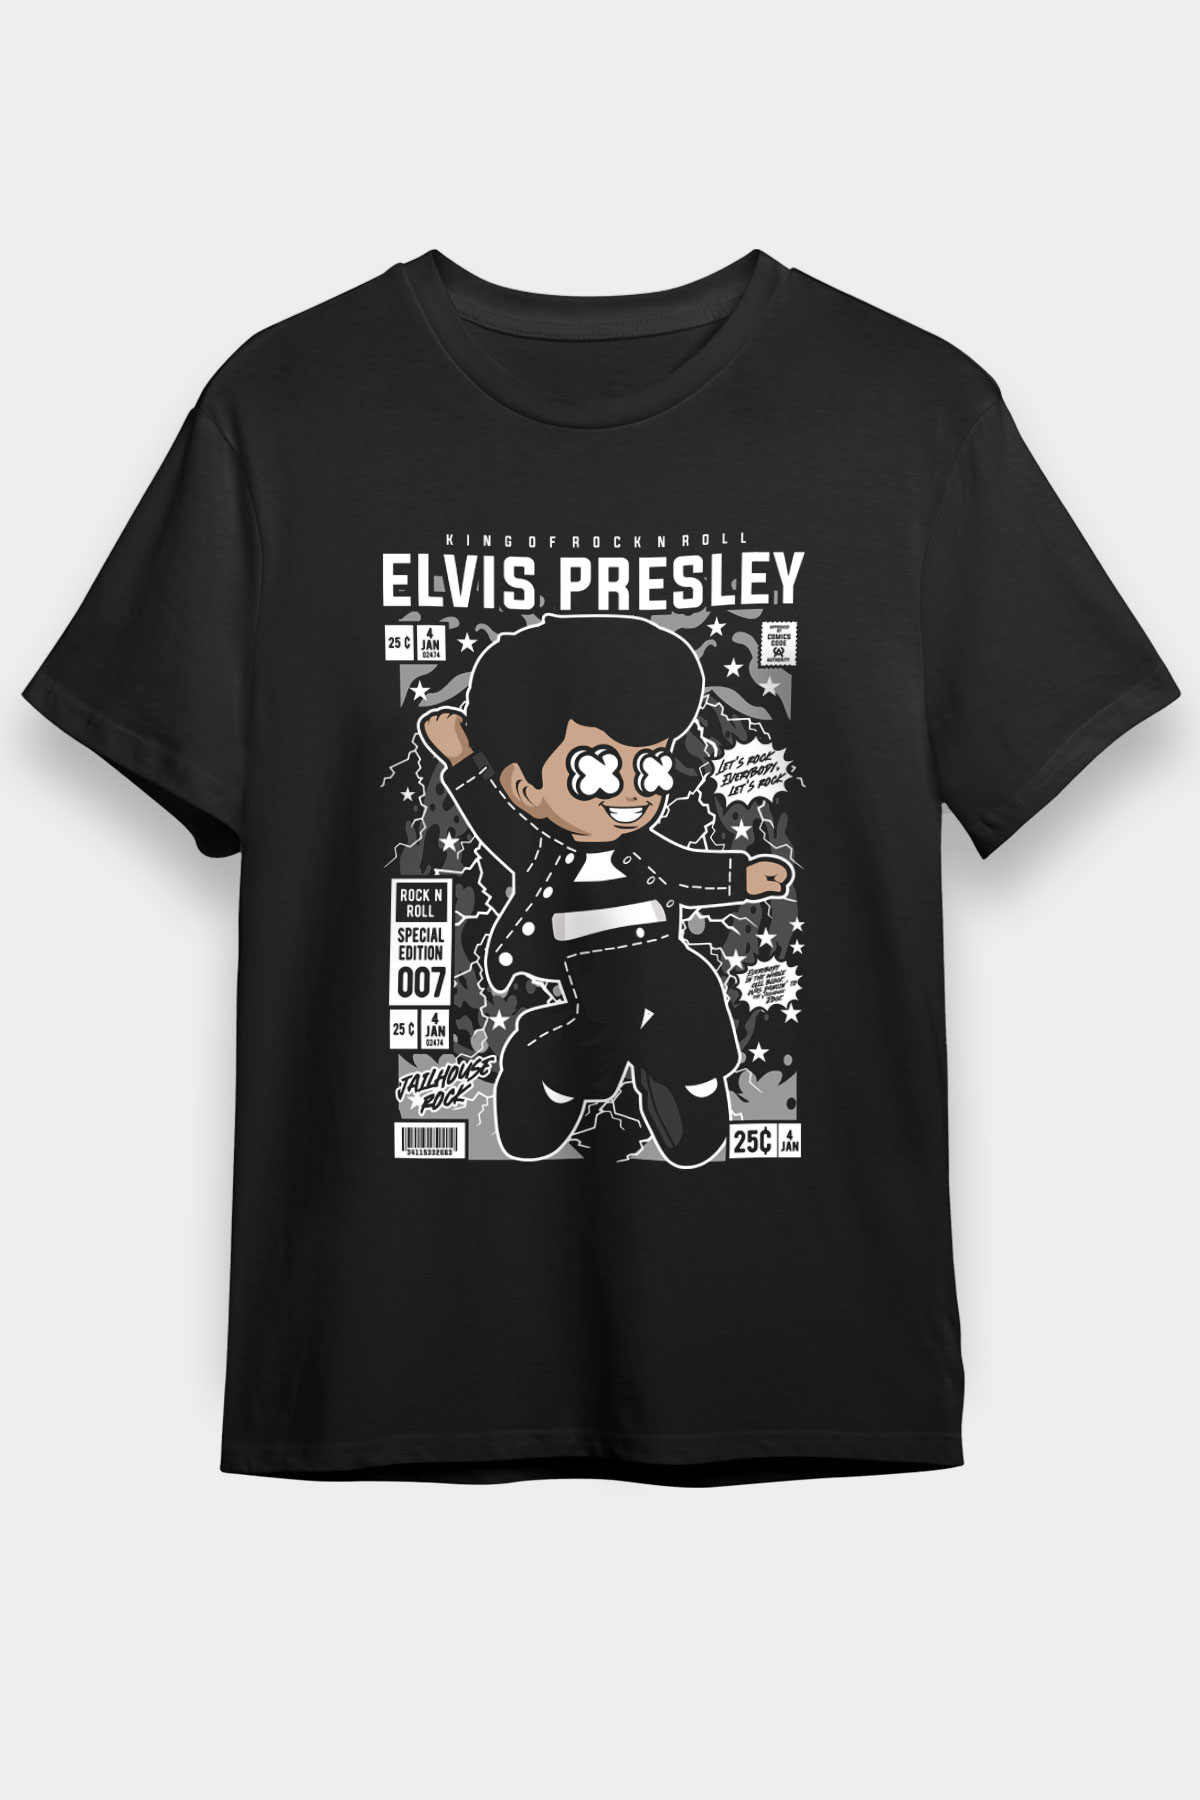 Elvis Presley T shirt, Music  Tshirt 09